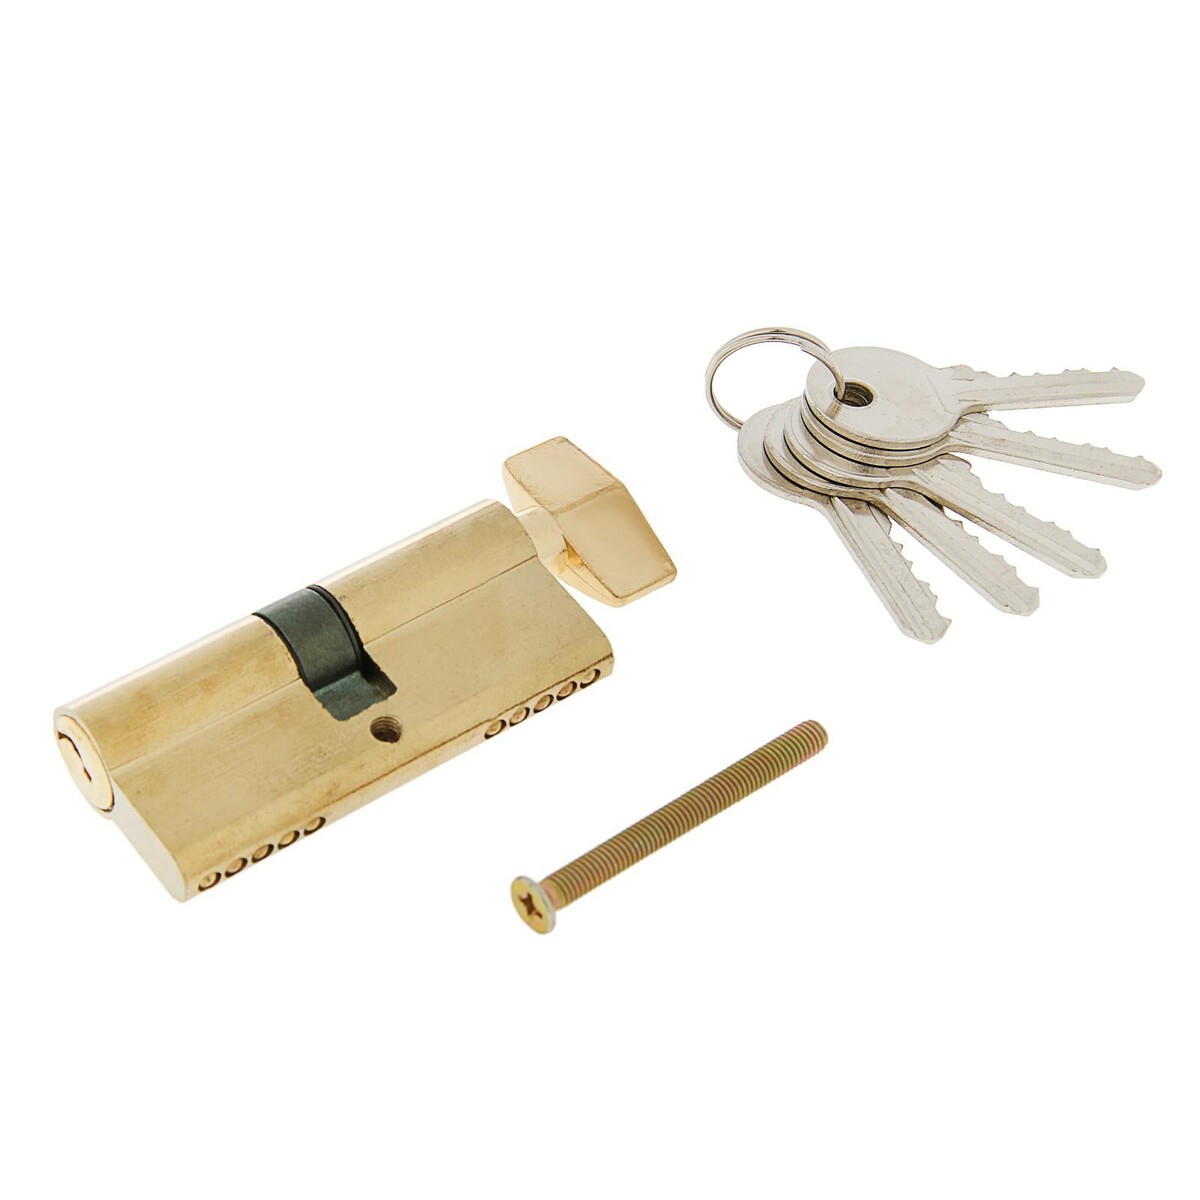 Цилиндровый механизм, 70 мм, с вертушкой, английский ключ, 5 ключей, цвет золото замок навесной аллюр вс1ч 375п 6776 блистер цилиндровый влагонепроницаемый 6 ключей